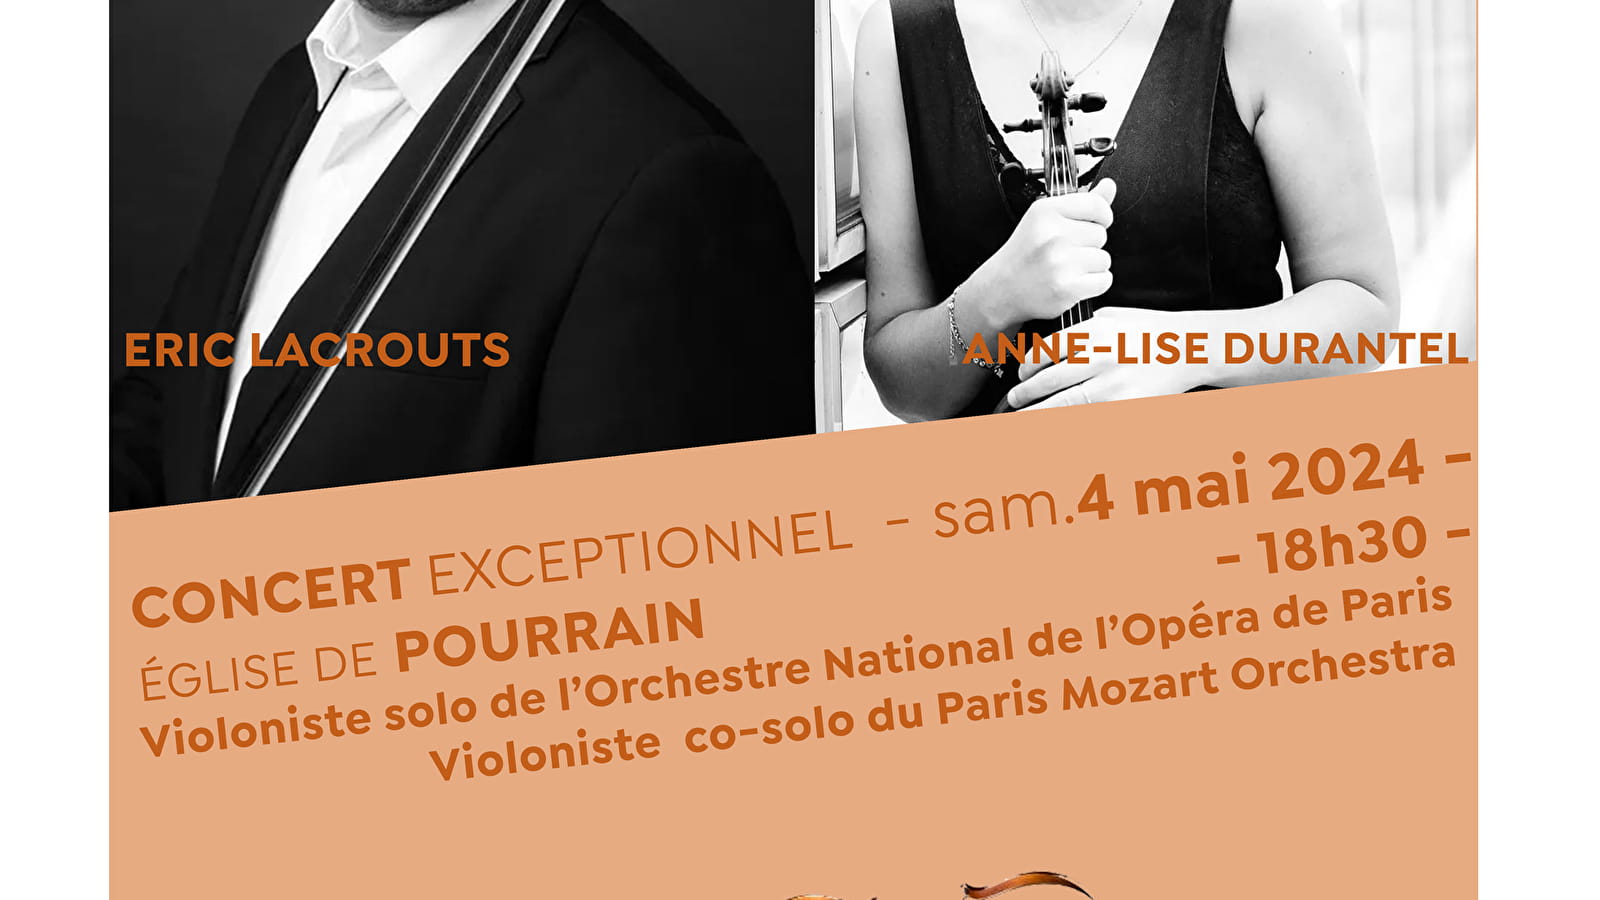 Concert de violons : Eric Lacrouts et Anne-Lise Durantel